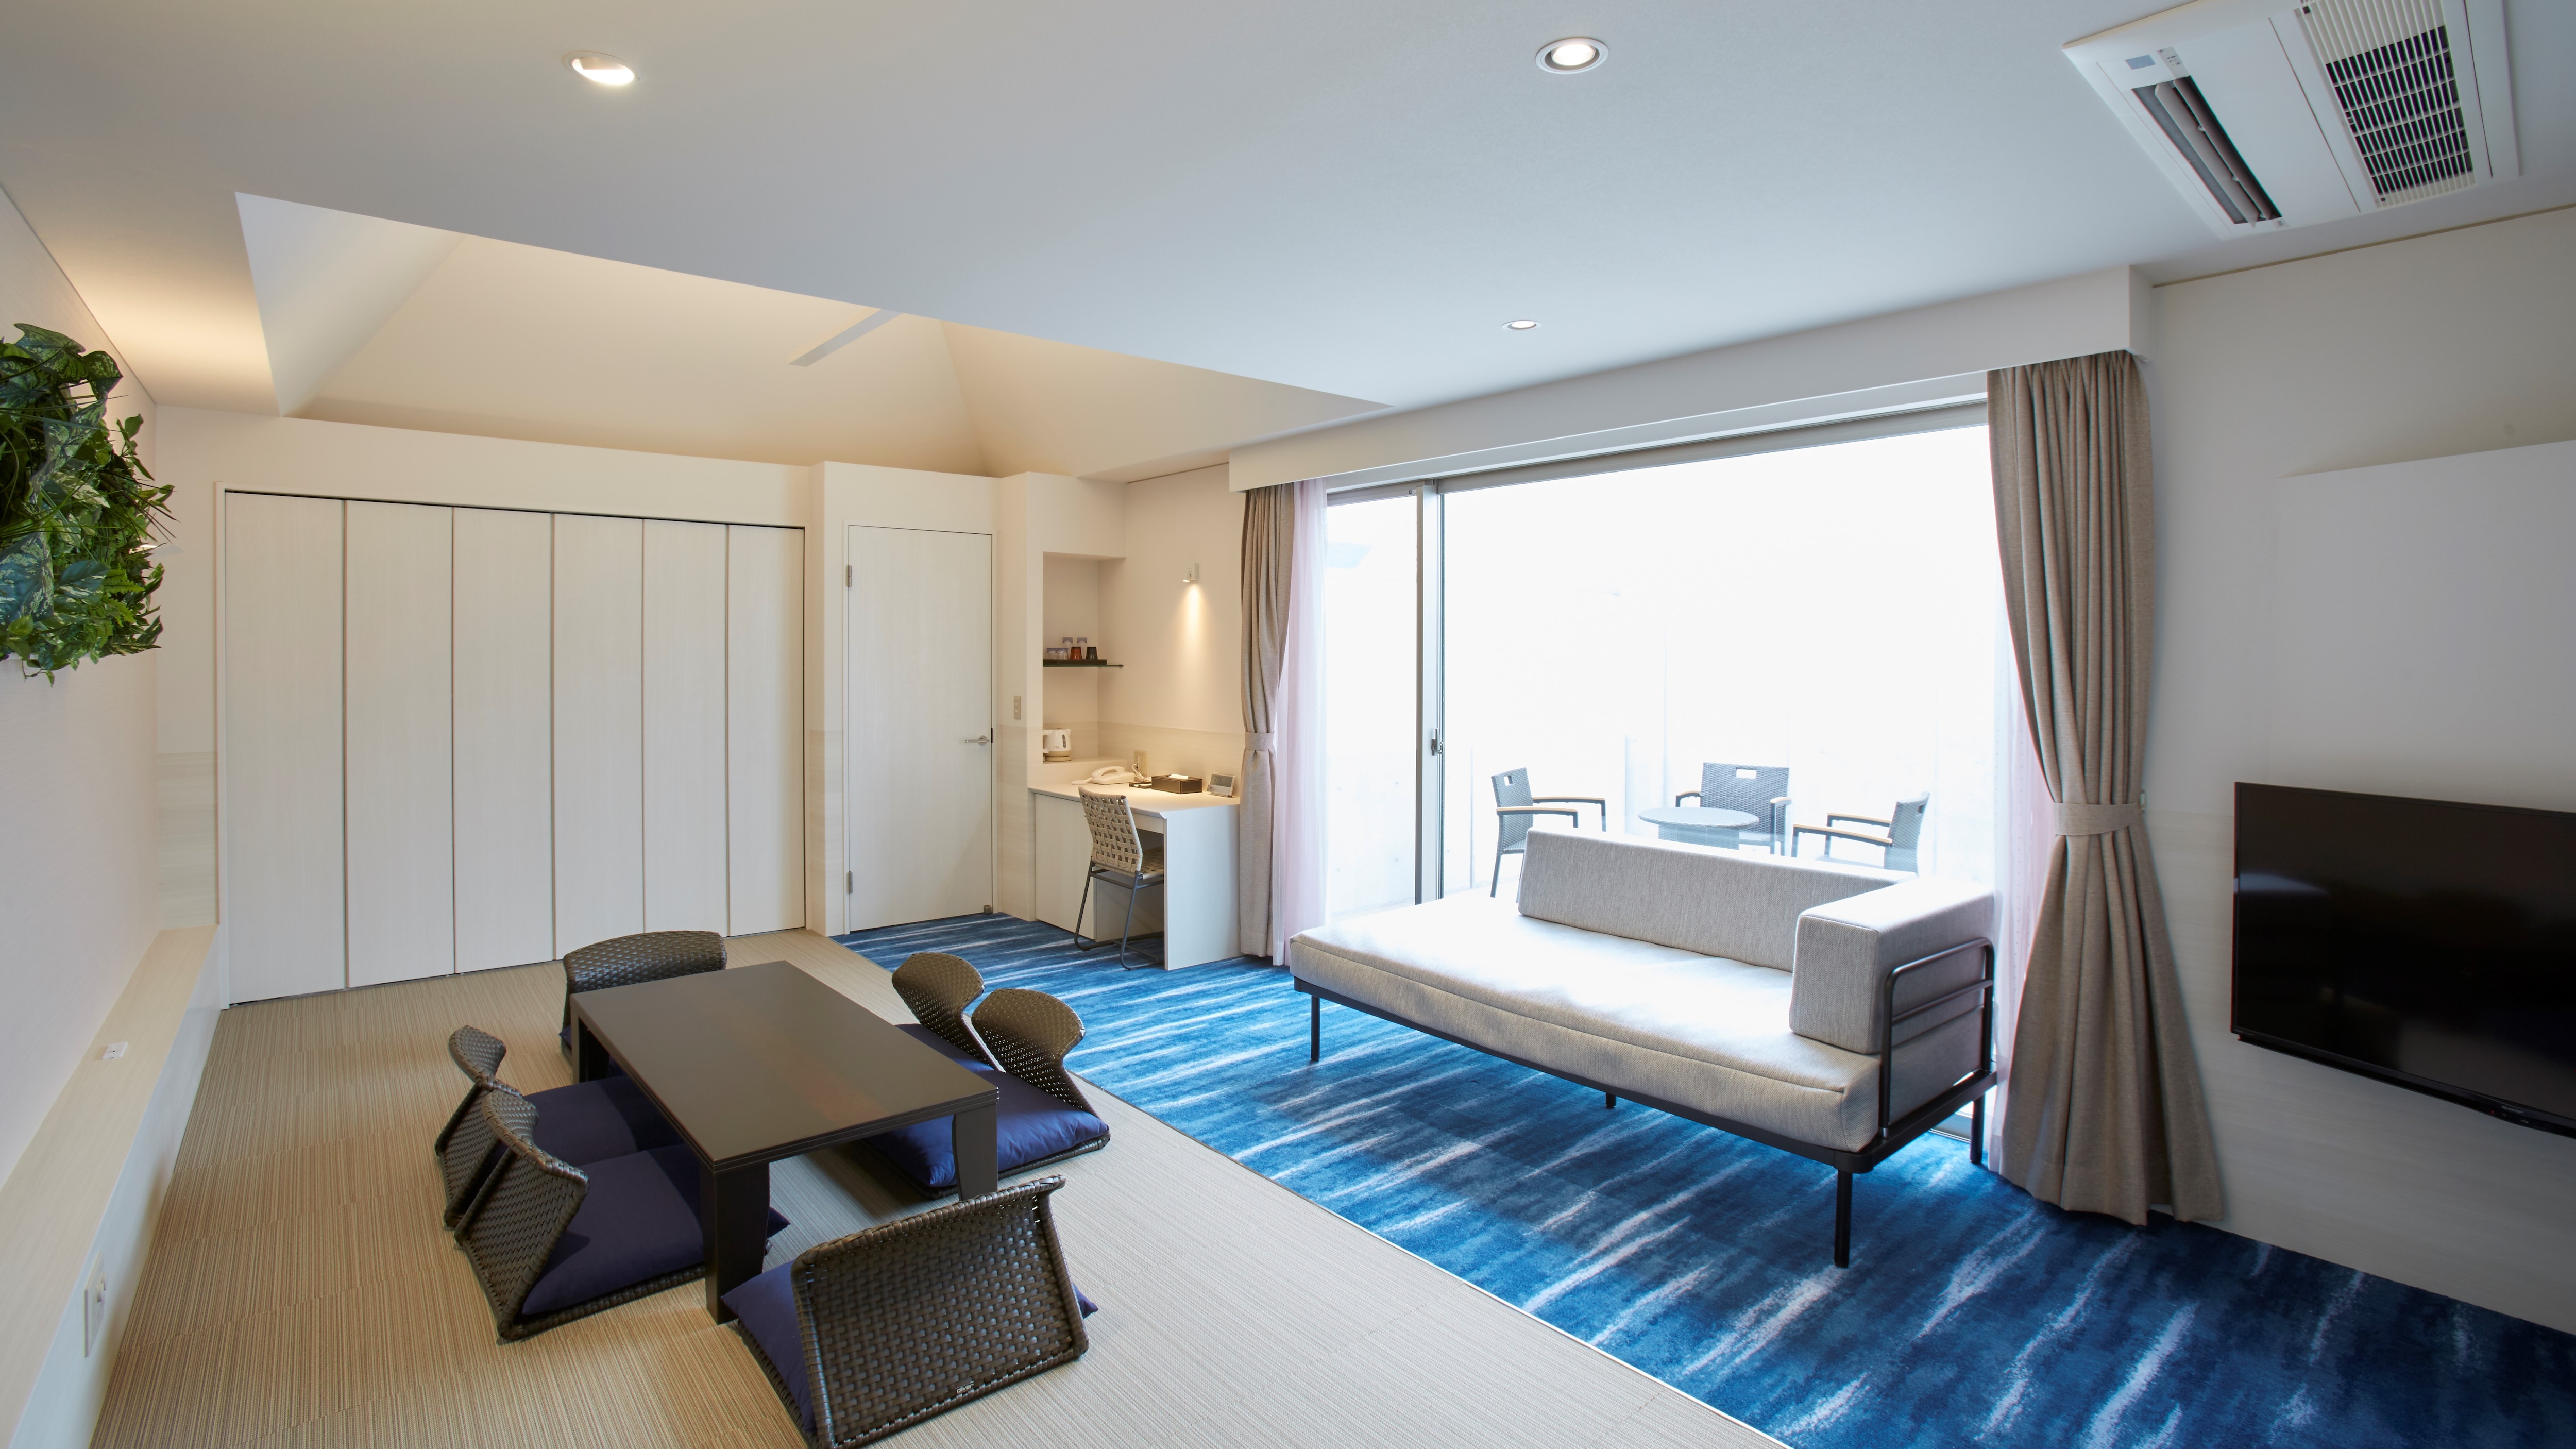 Nikmati pemandian air panas di kamar Anda Villa dengan spa pribadi & minus; kamar bergaya Jepang & minus;